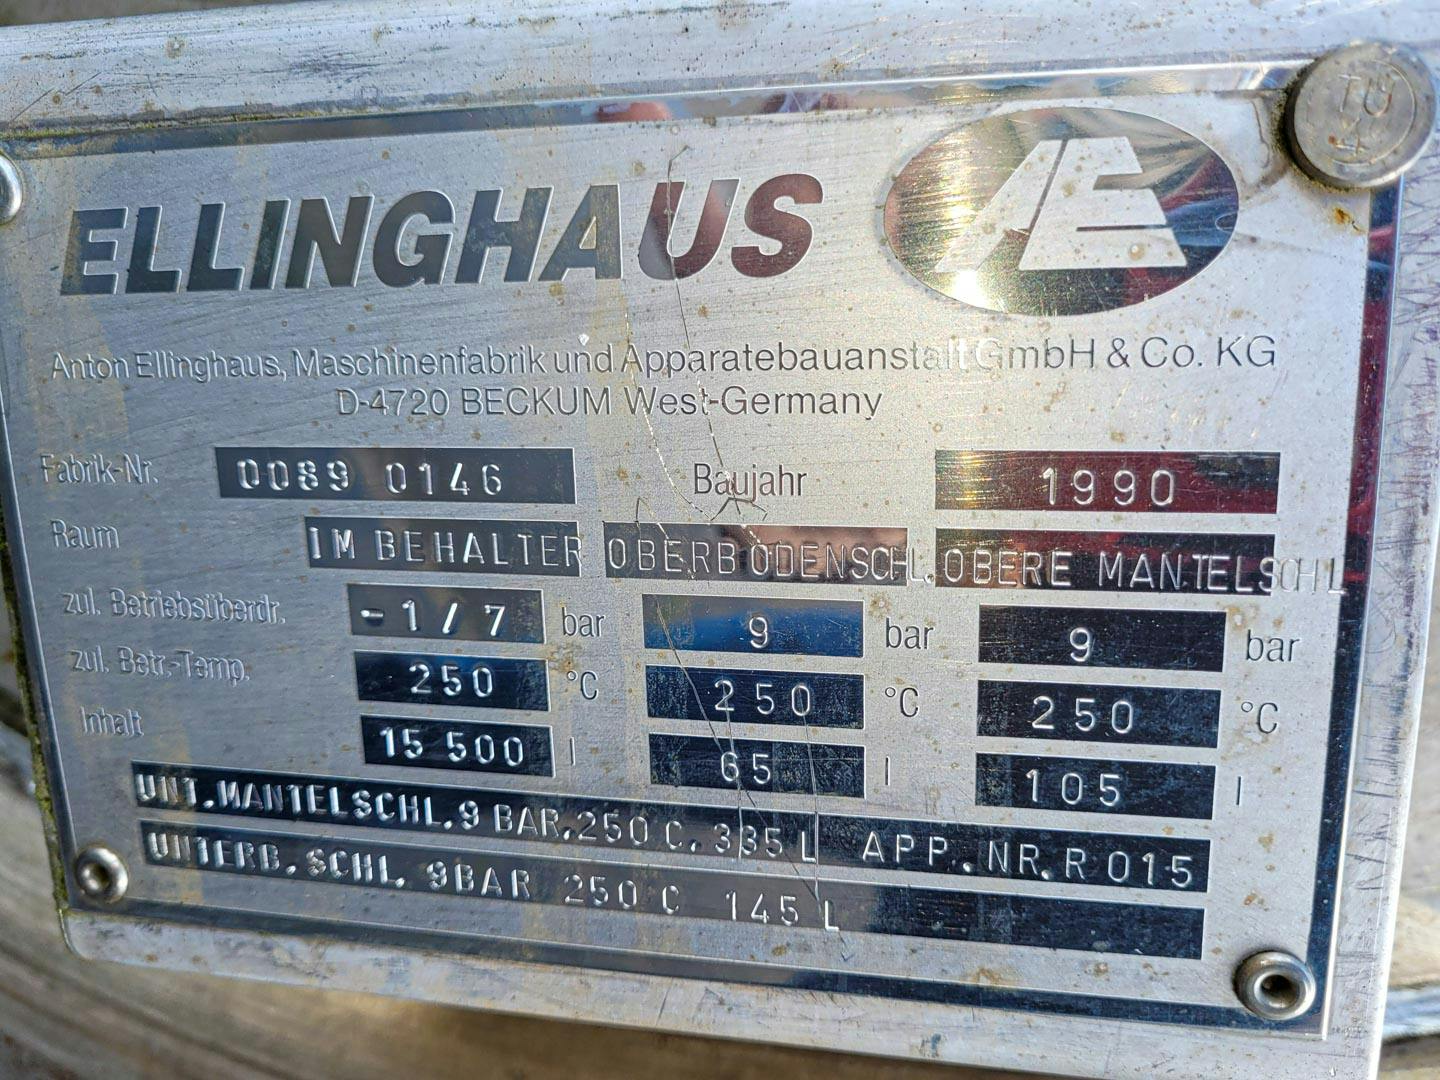 Ellinghaus 15500 Ltr - Reattore in acciaio inox - image 9